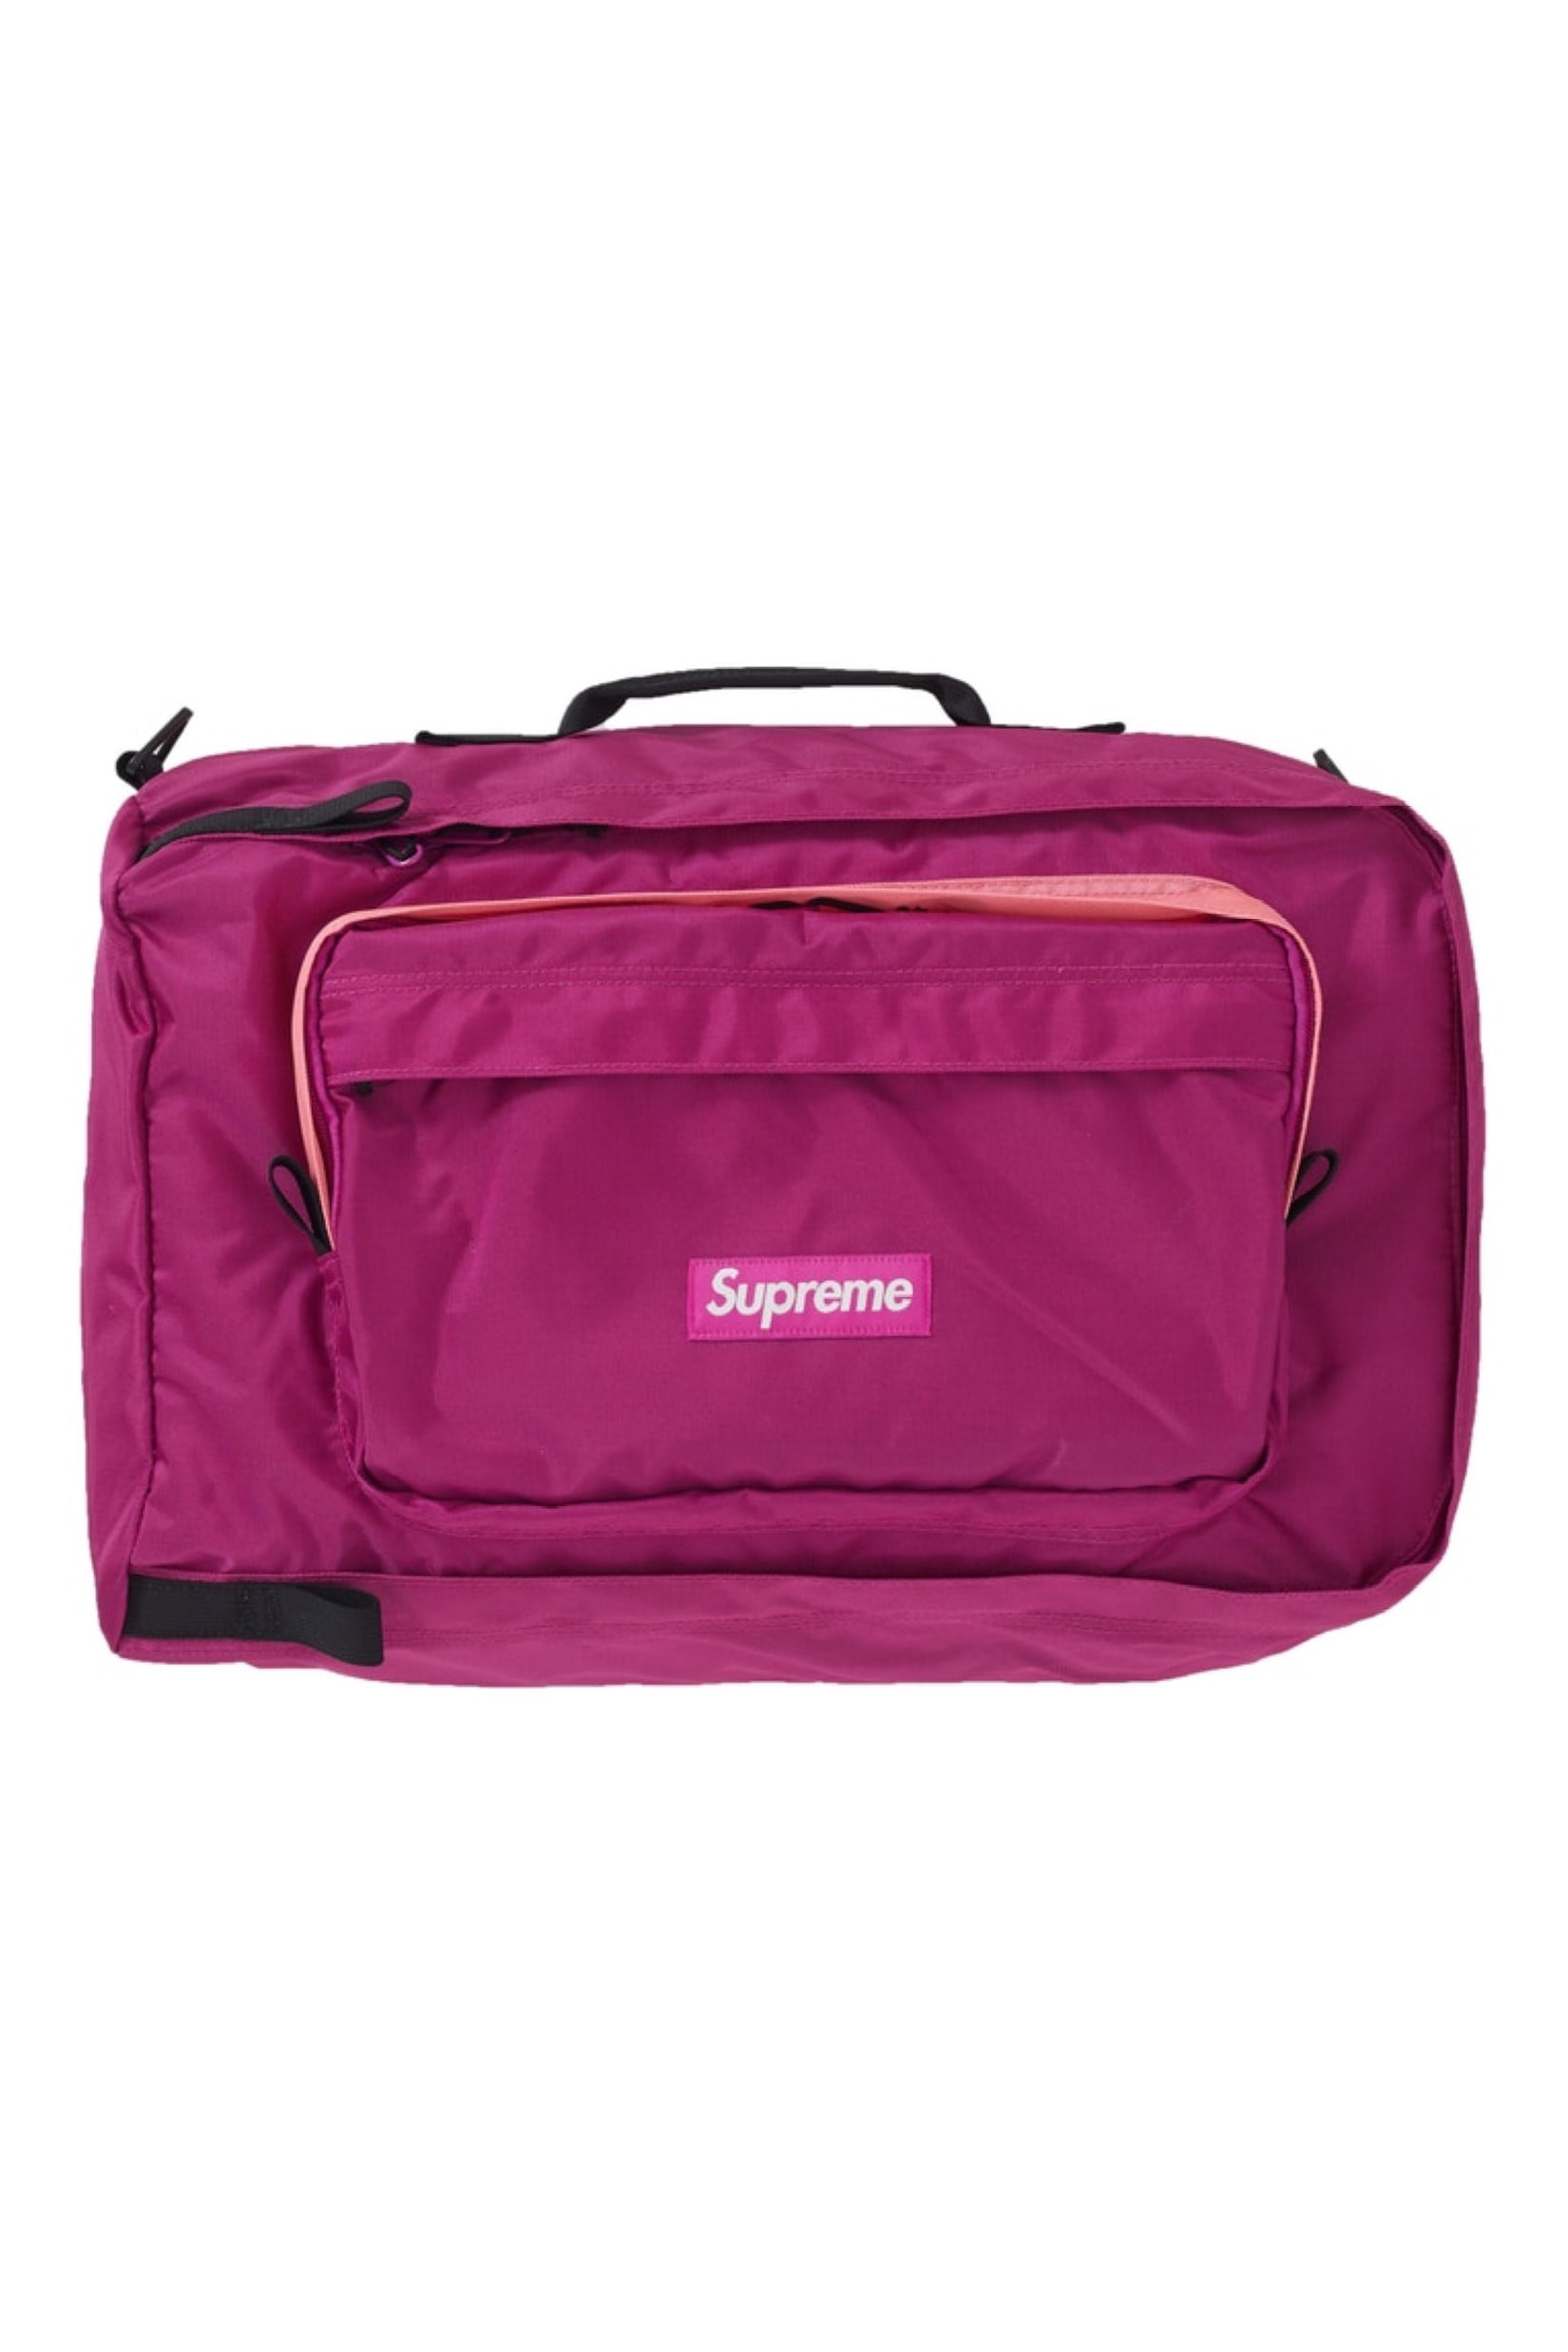 Supreme Duffle Bag (FW19) Magenta - 0 - 0